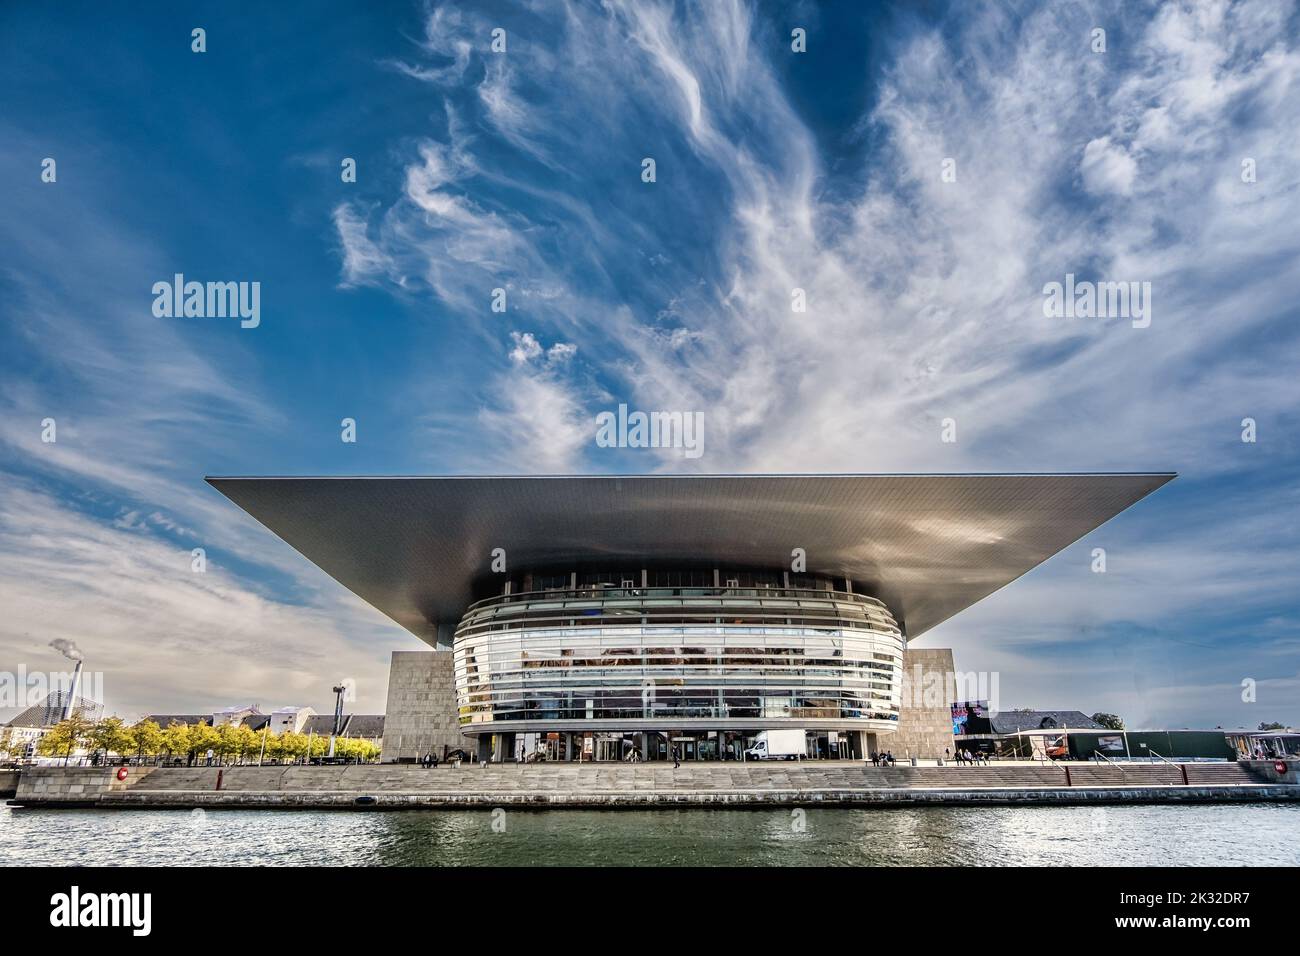 The modern royal Opera House in Copenhagen, Denmark Stock Photo